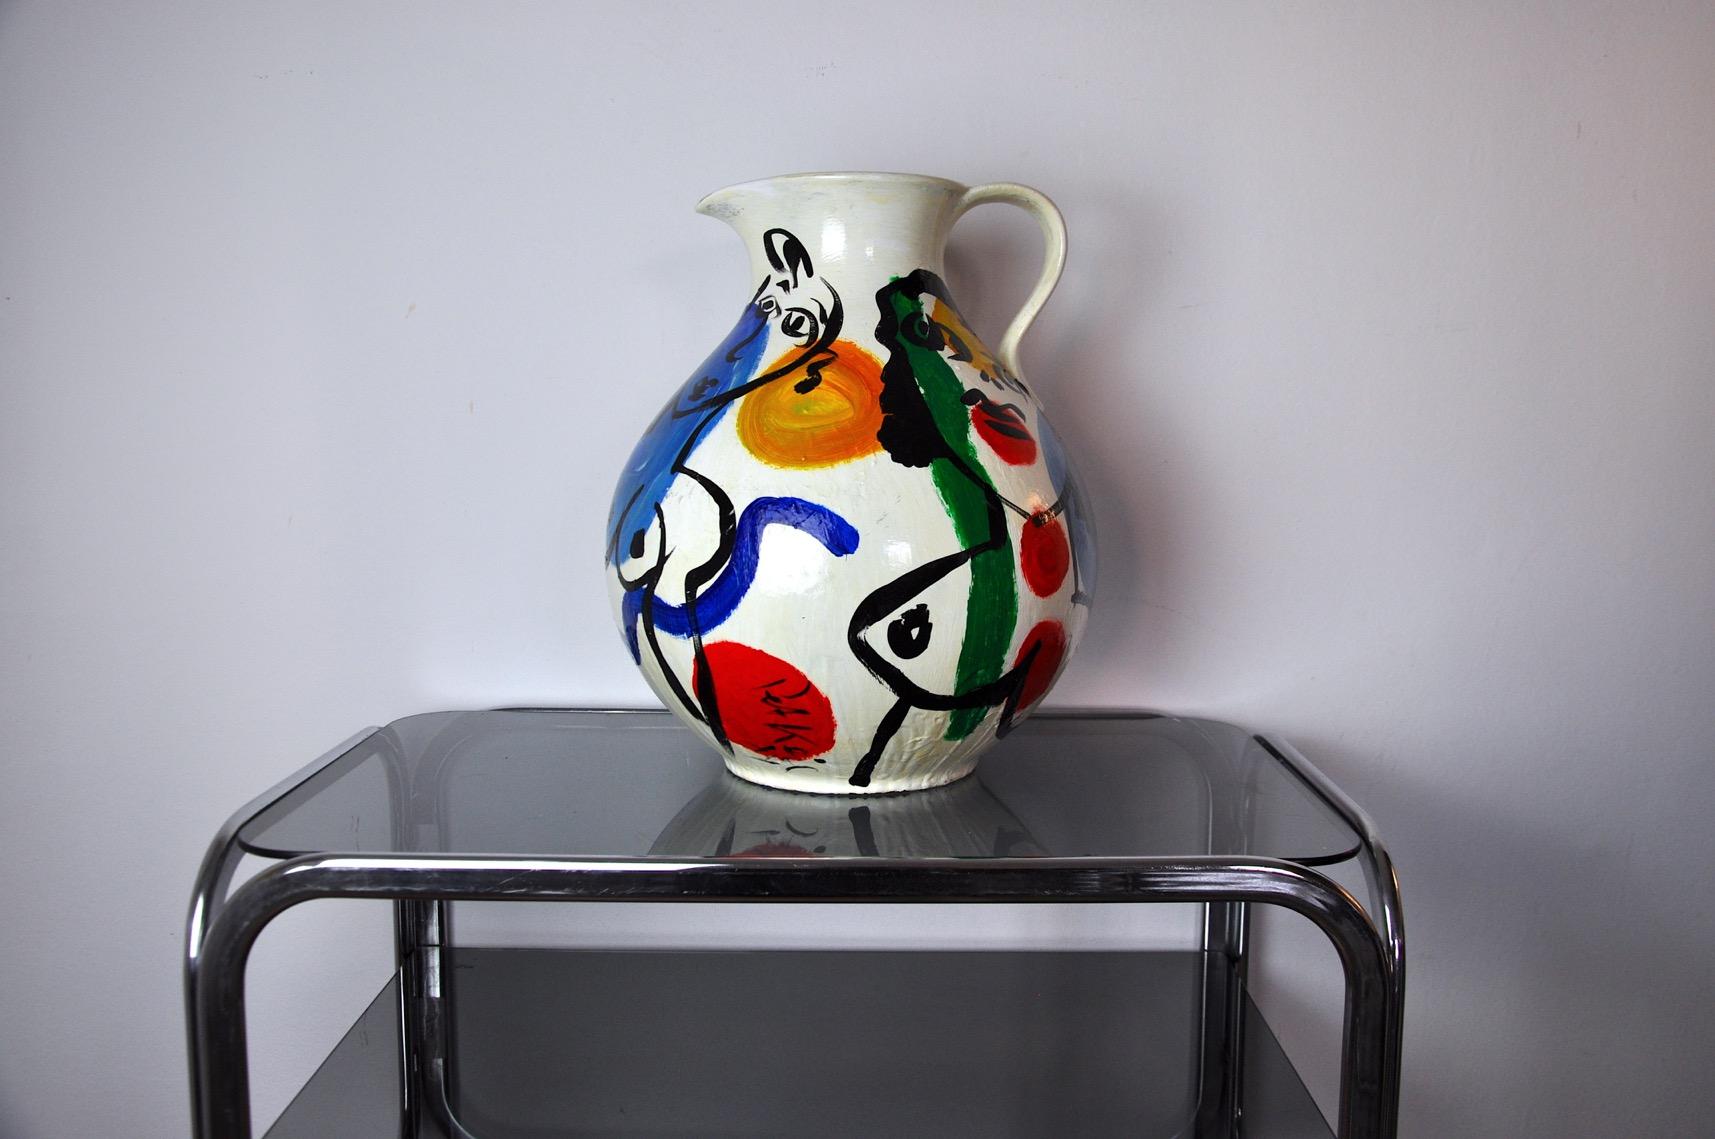 Superbe et grand vase abstrait peint par l'artiste allemand peter robert keil en 1984. Ce vase est en parfait état et ses dimensions le rendent vraiment unique. Peter robert keil est un peintre contemporain reconnu en allemagne pour ses formes